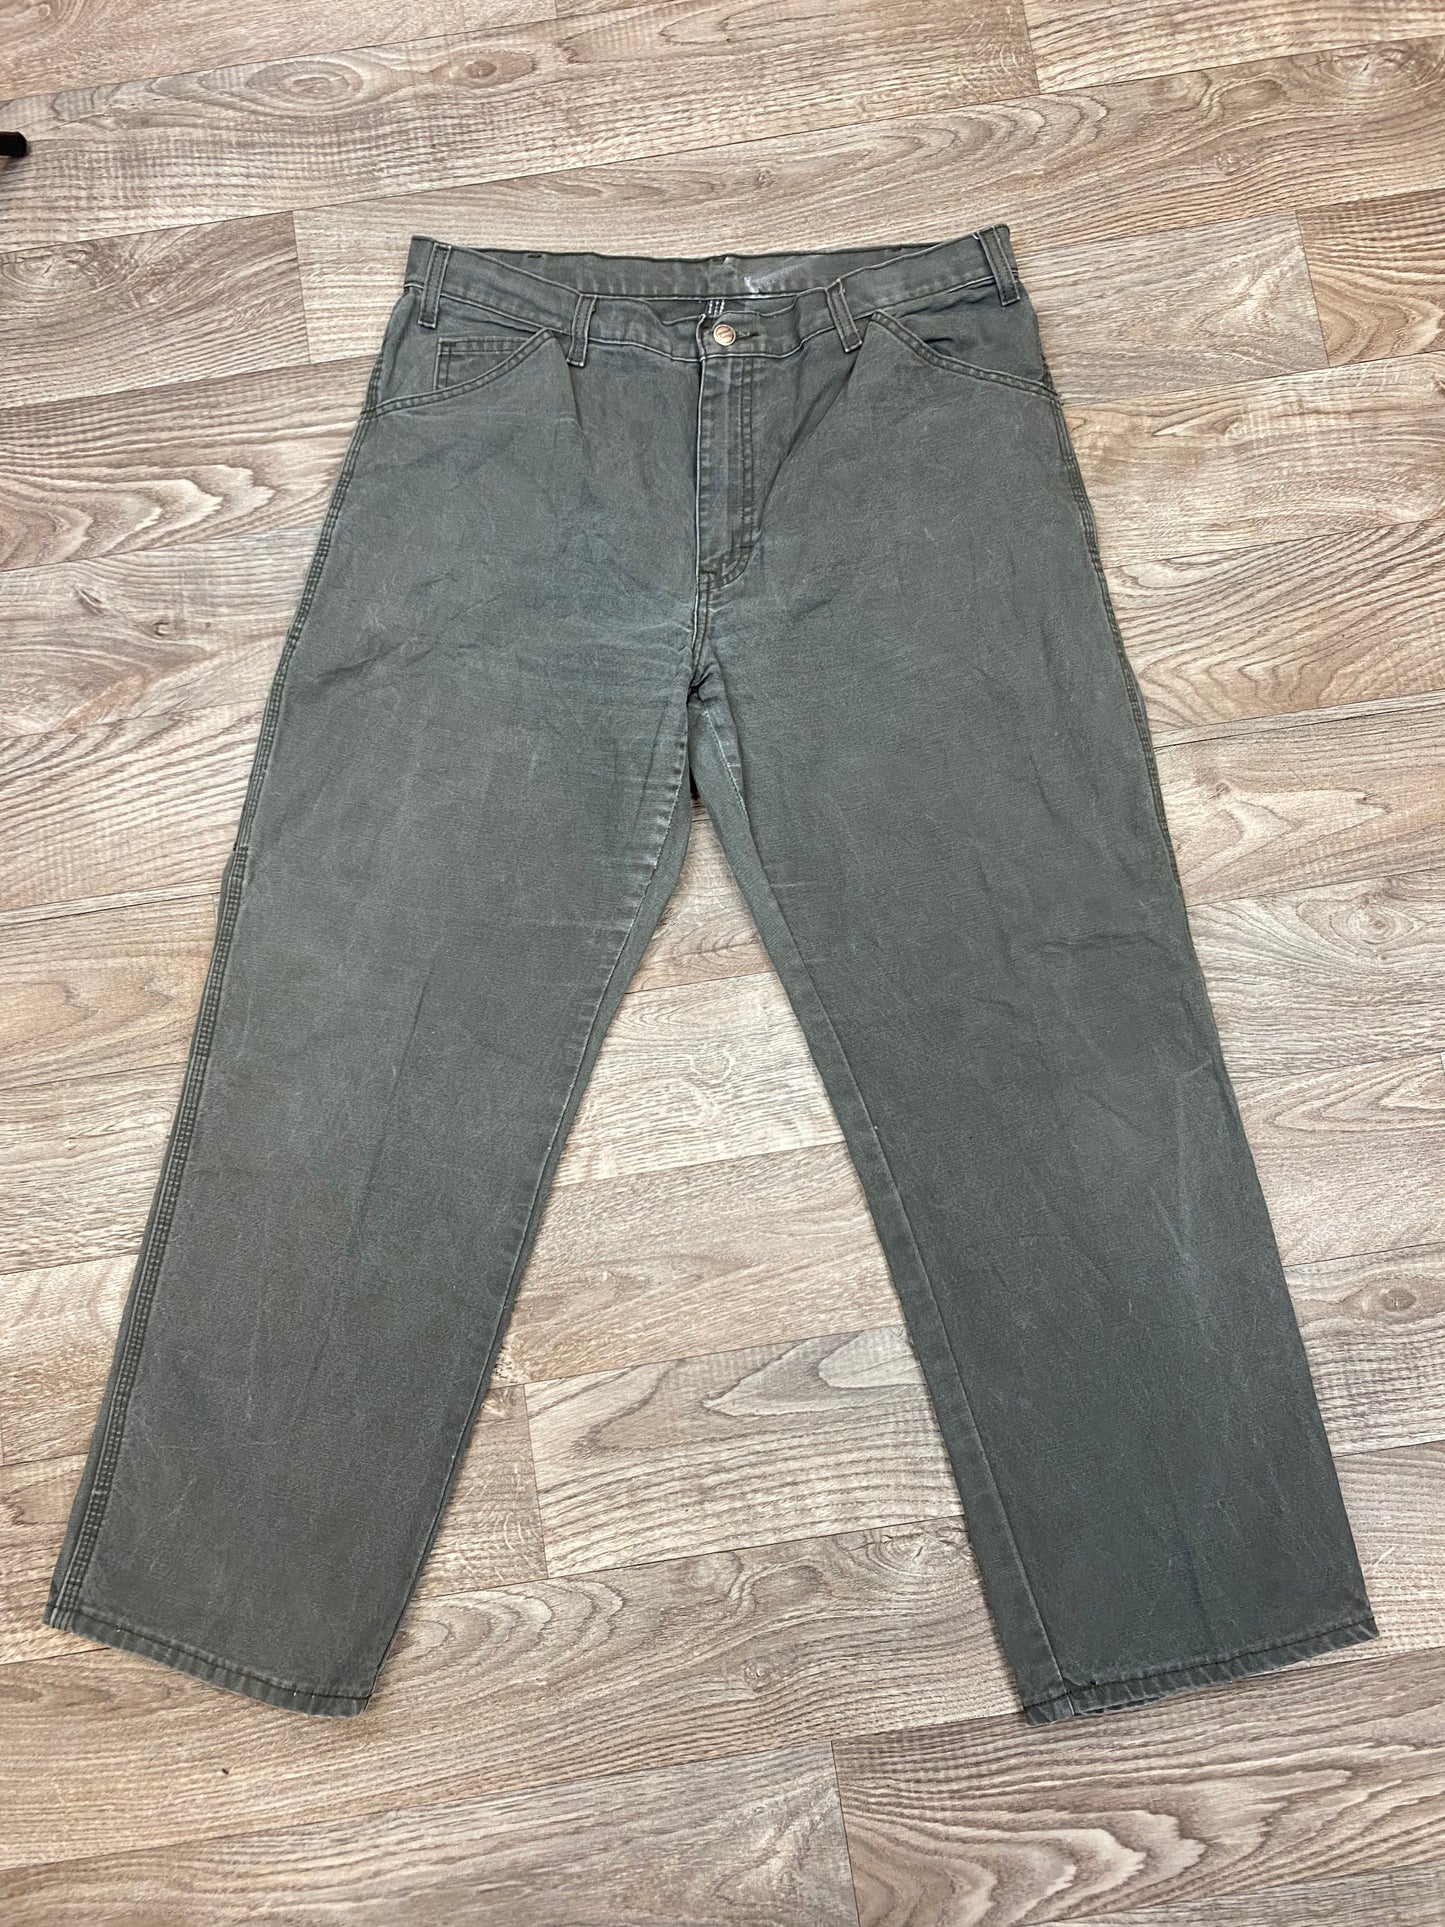 Vintage Dickies Carpenter 36x30 Pants